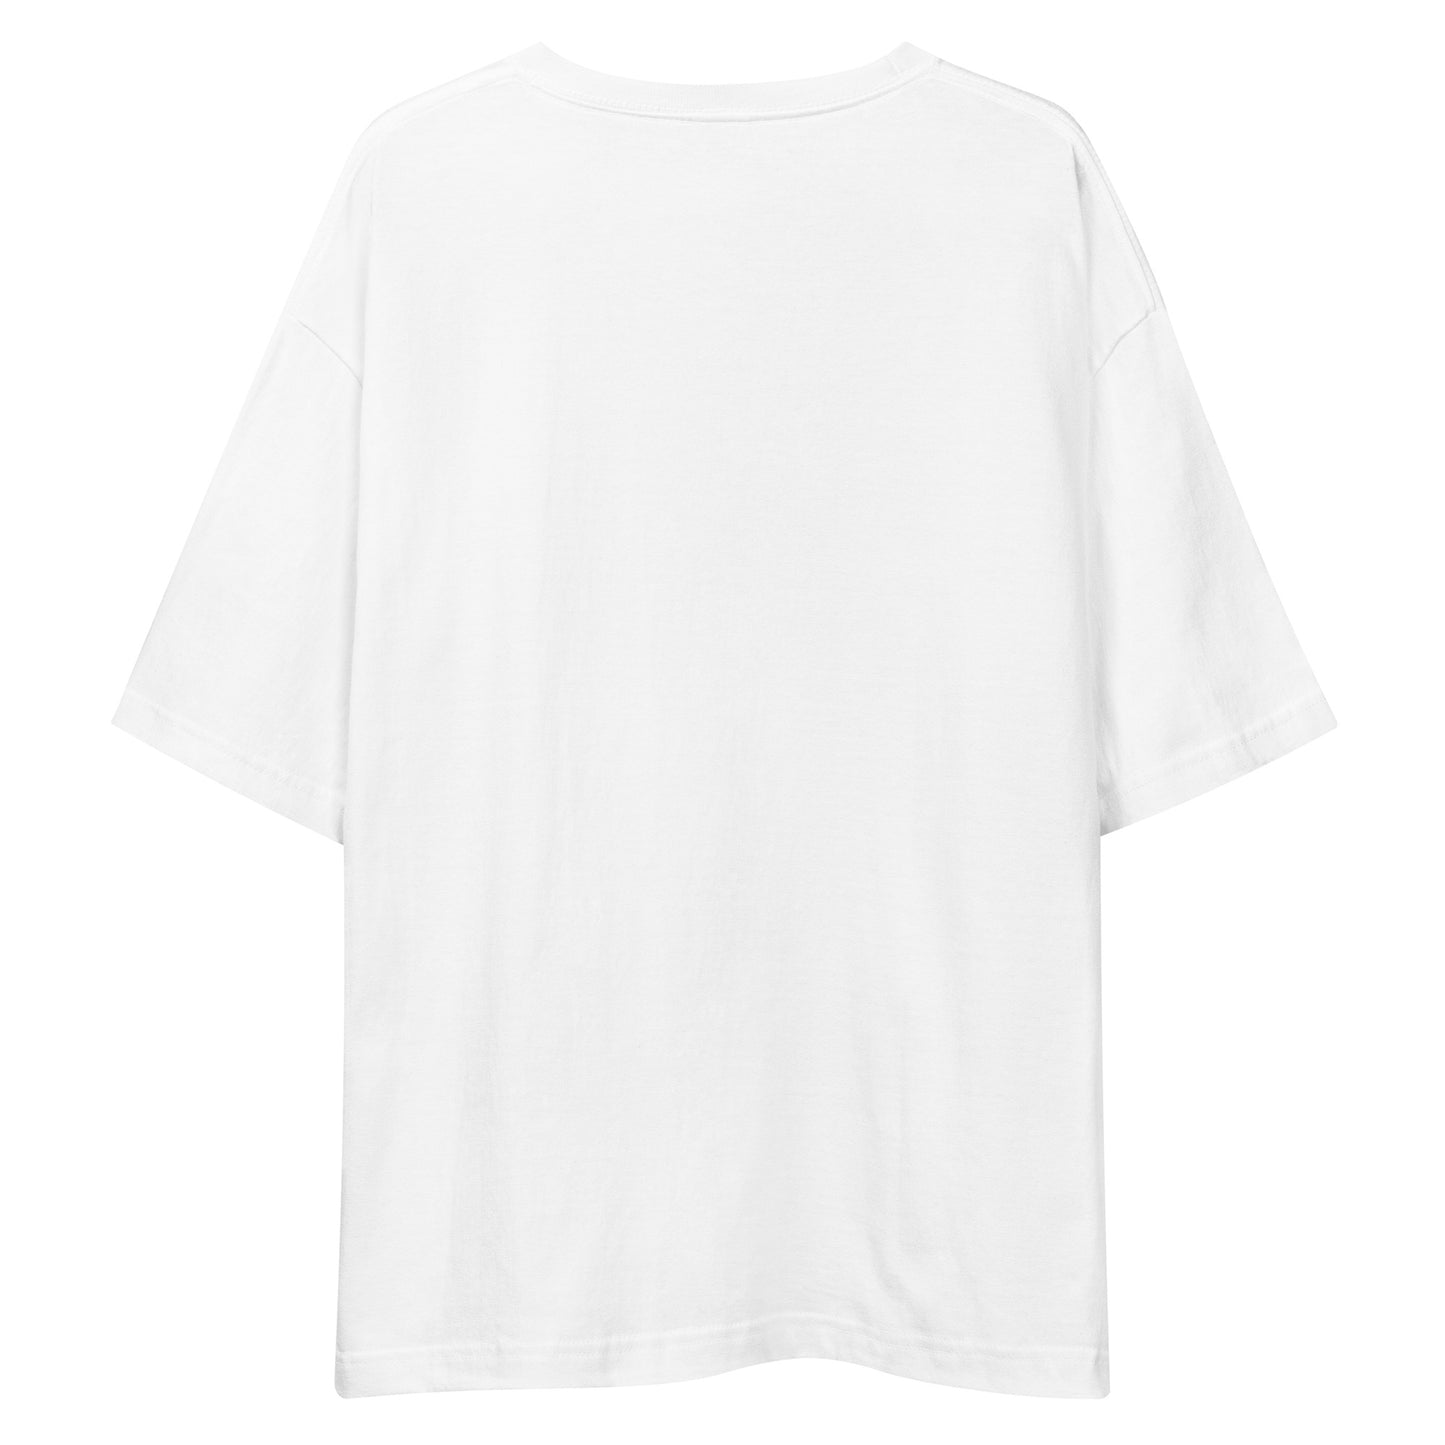 E236 - Tシャツ/ビッグシルエット(MXウィン : ホワイト/ブラック)